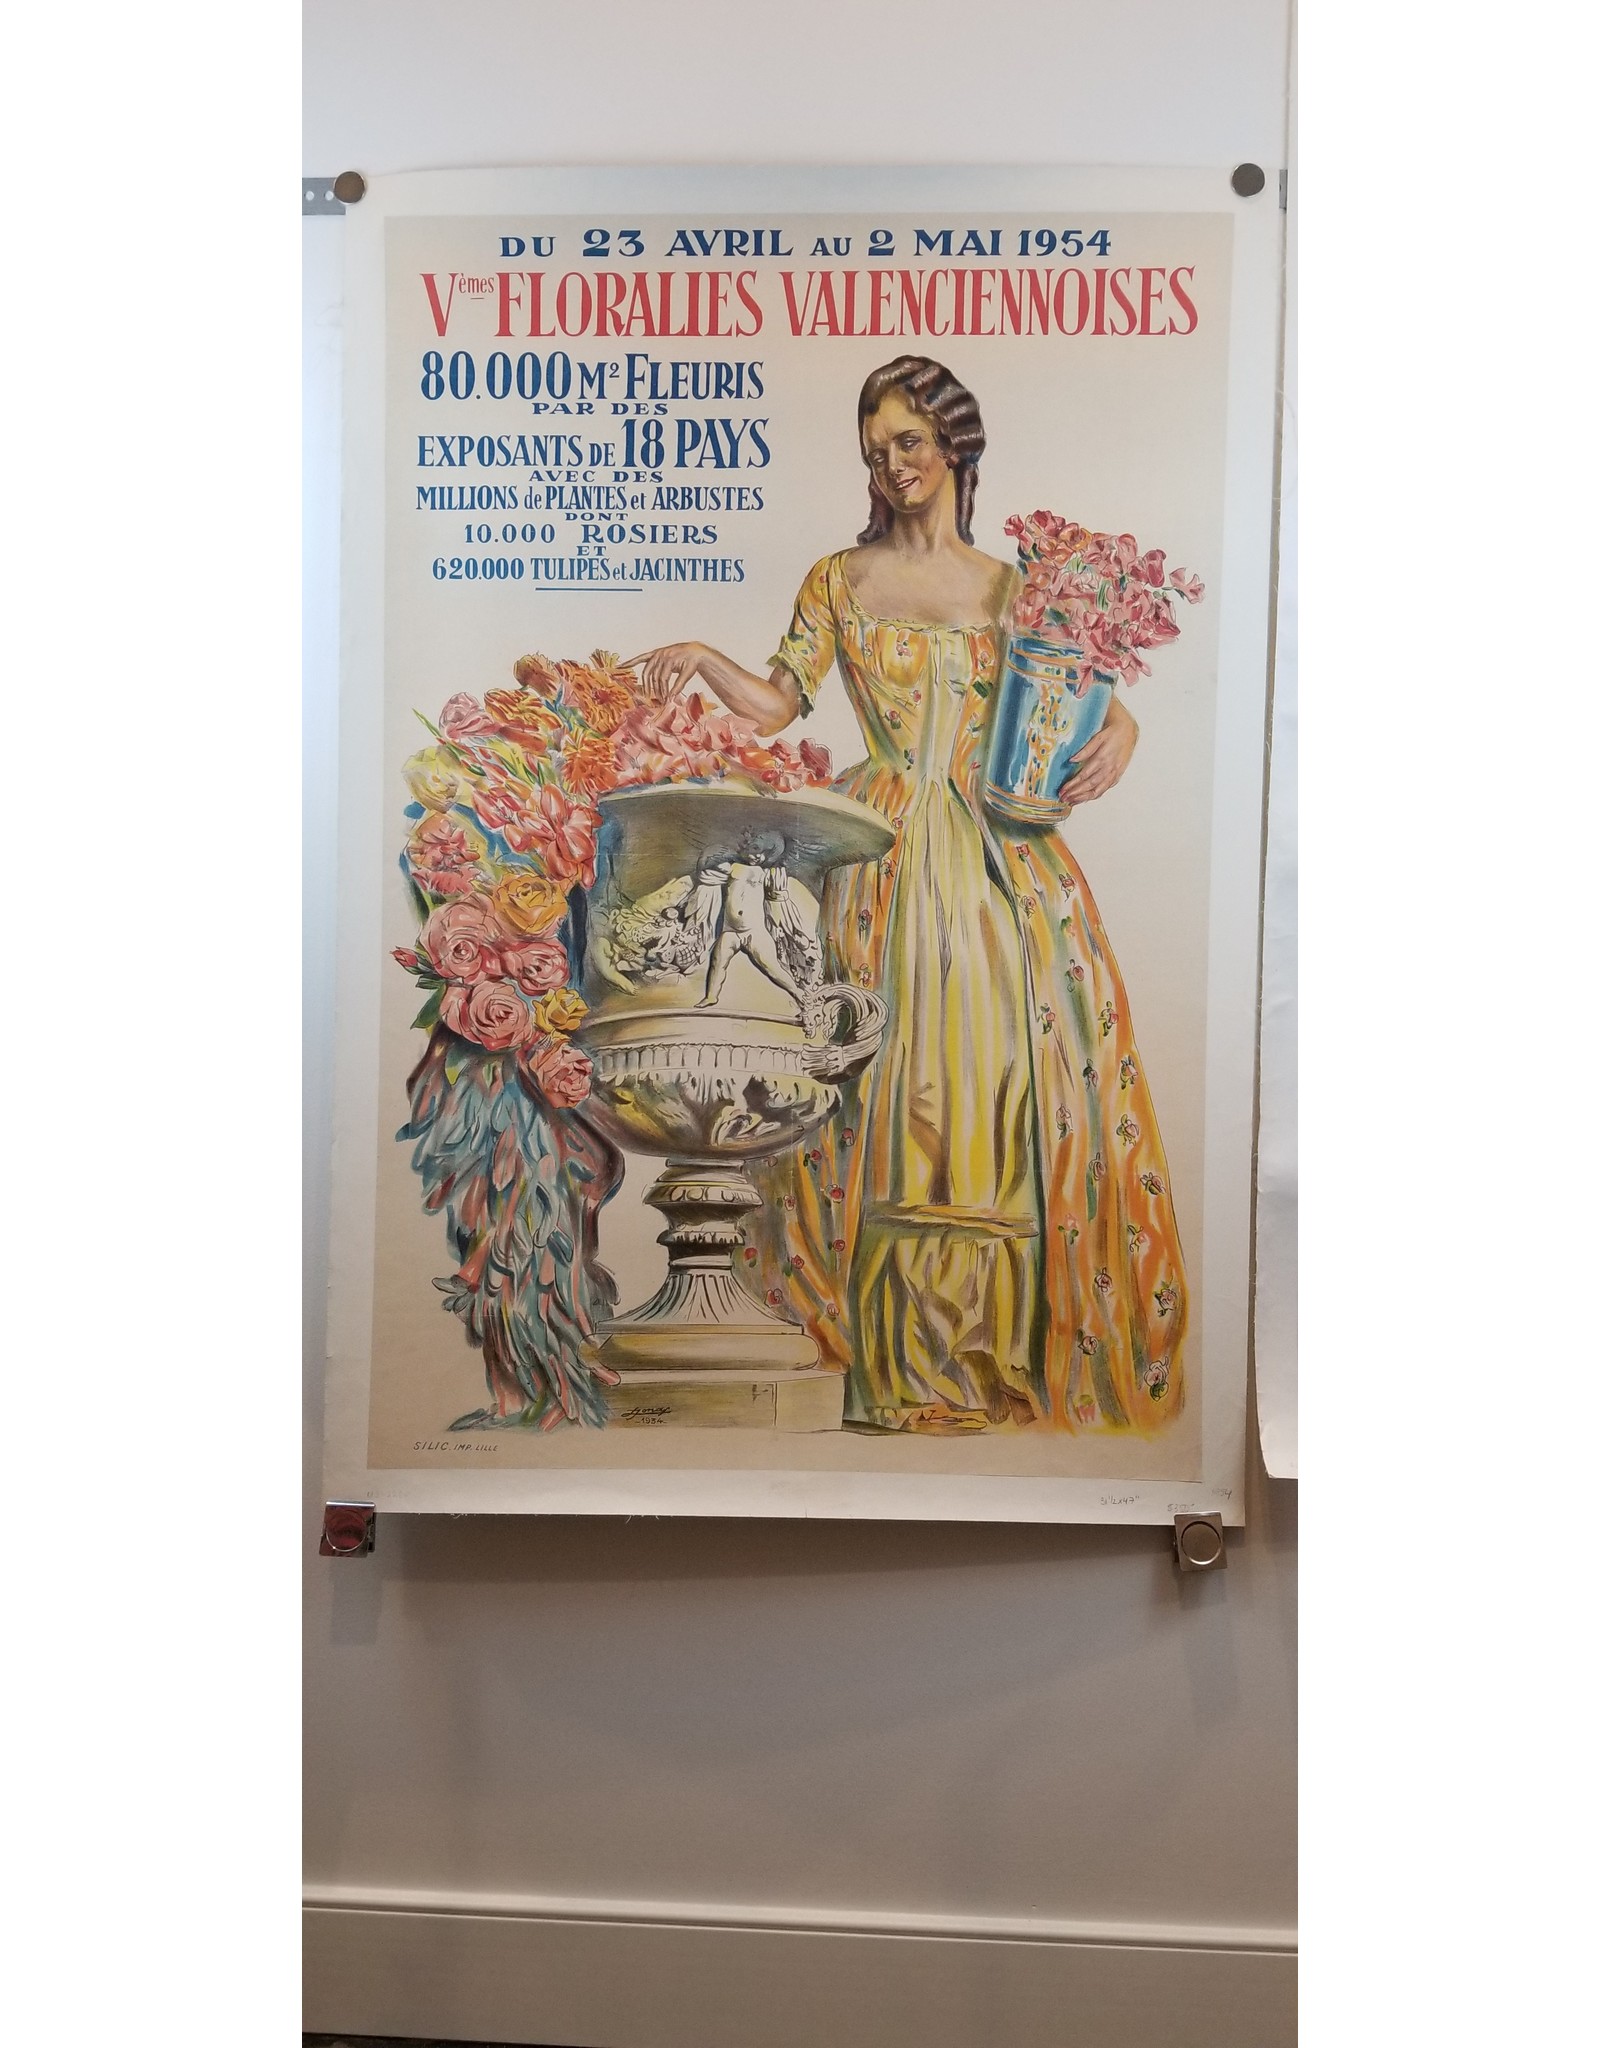 SPV Vèmes Floralies Valenceiennoises Lithograph Poster